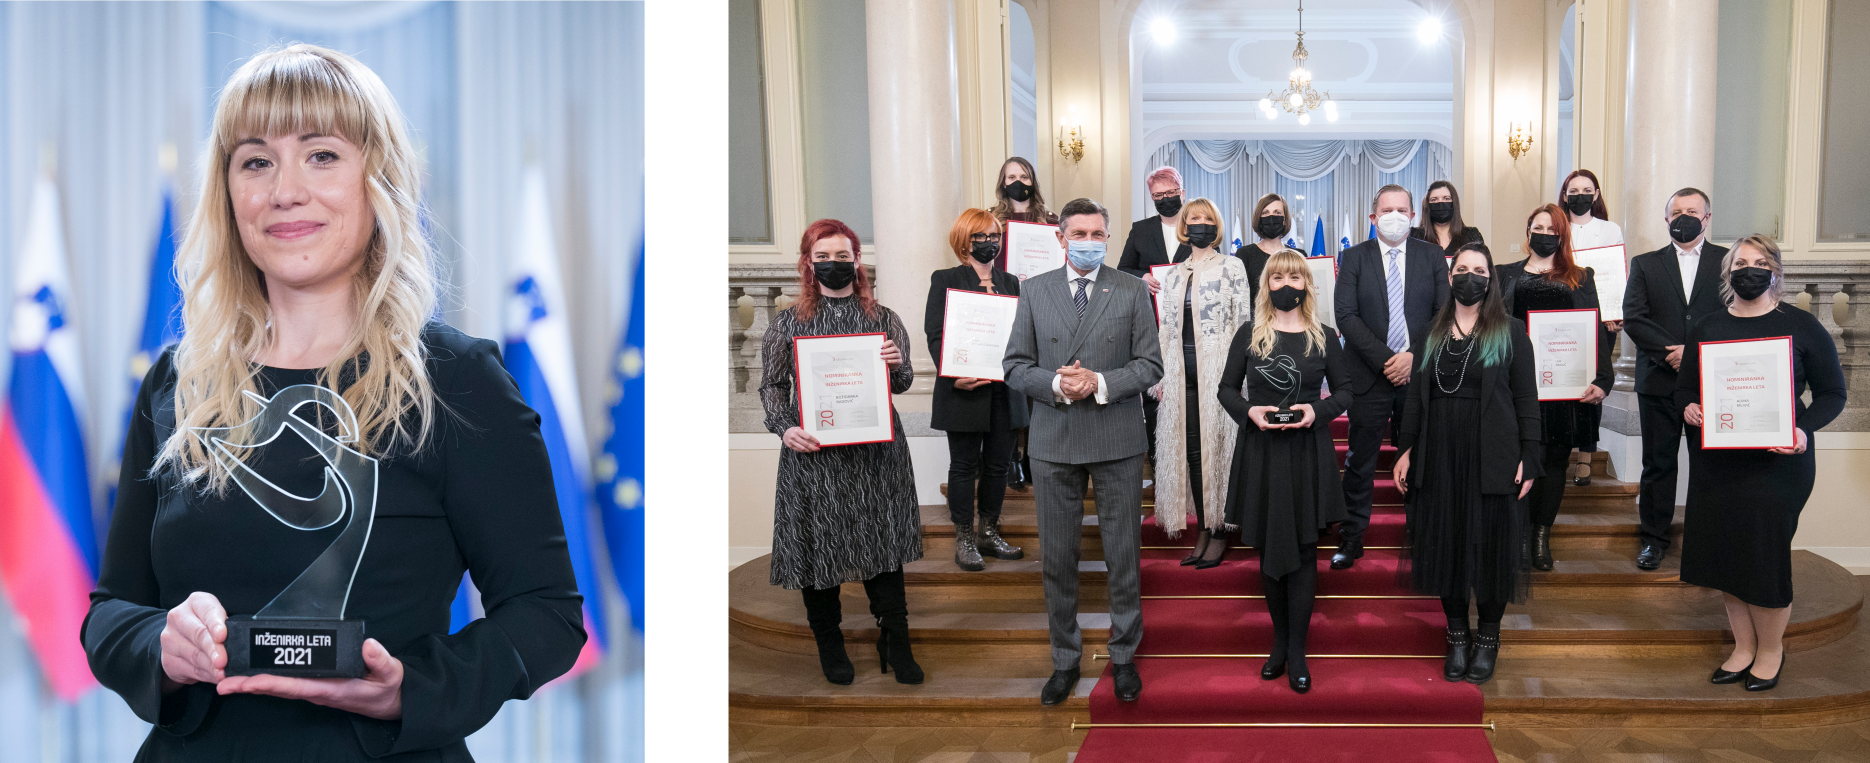 LEVO: dr. Nataša Kovačević; DESNO: Sprejem pri predsedniku Borutu Pahorju (dr. Nataša Kovačević - prva vrsta tretja z leve) FOTO: Andrej Križ